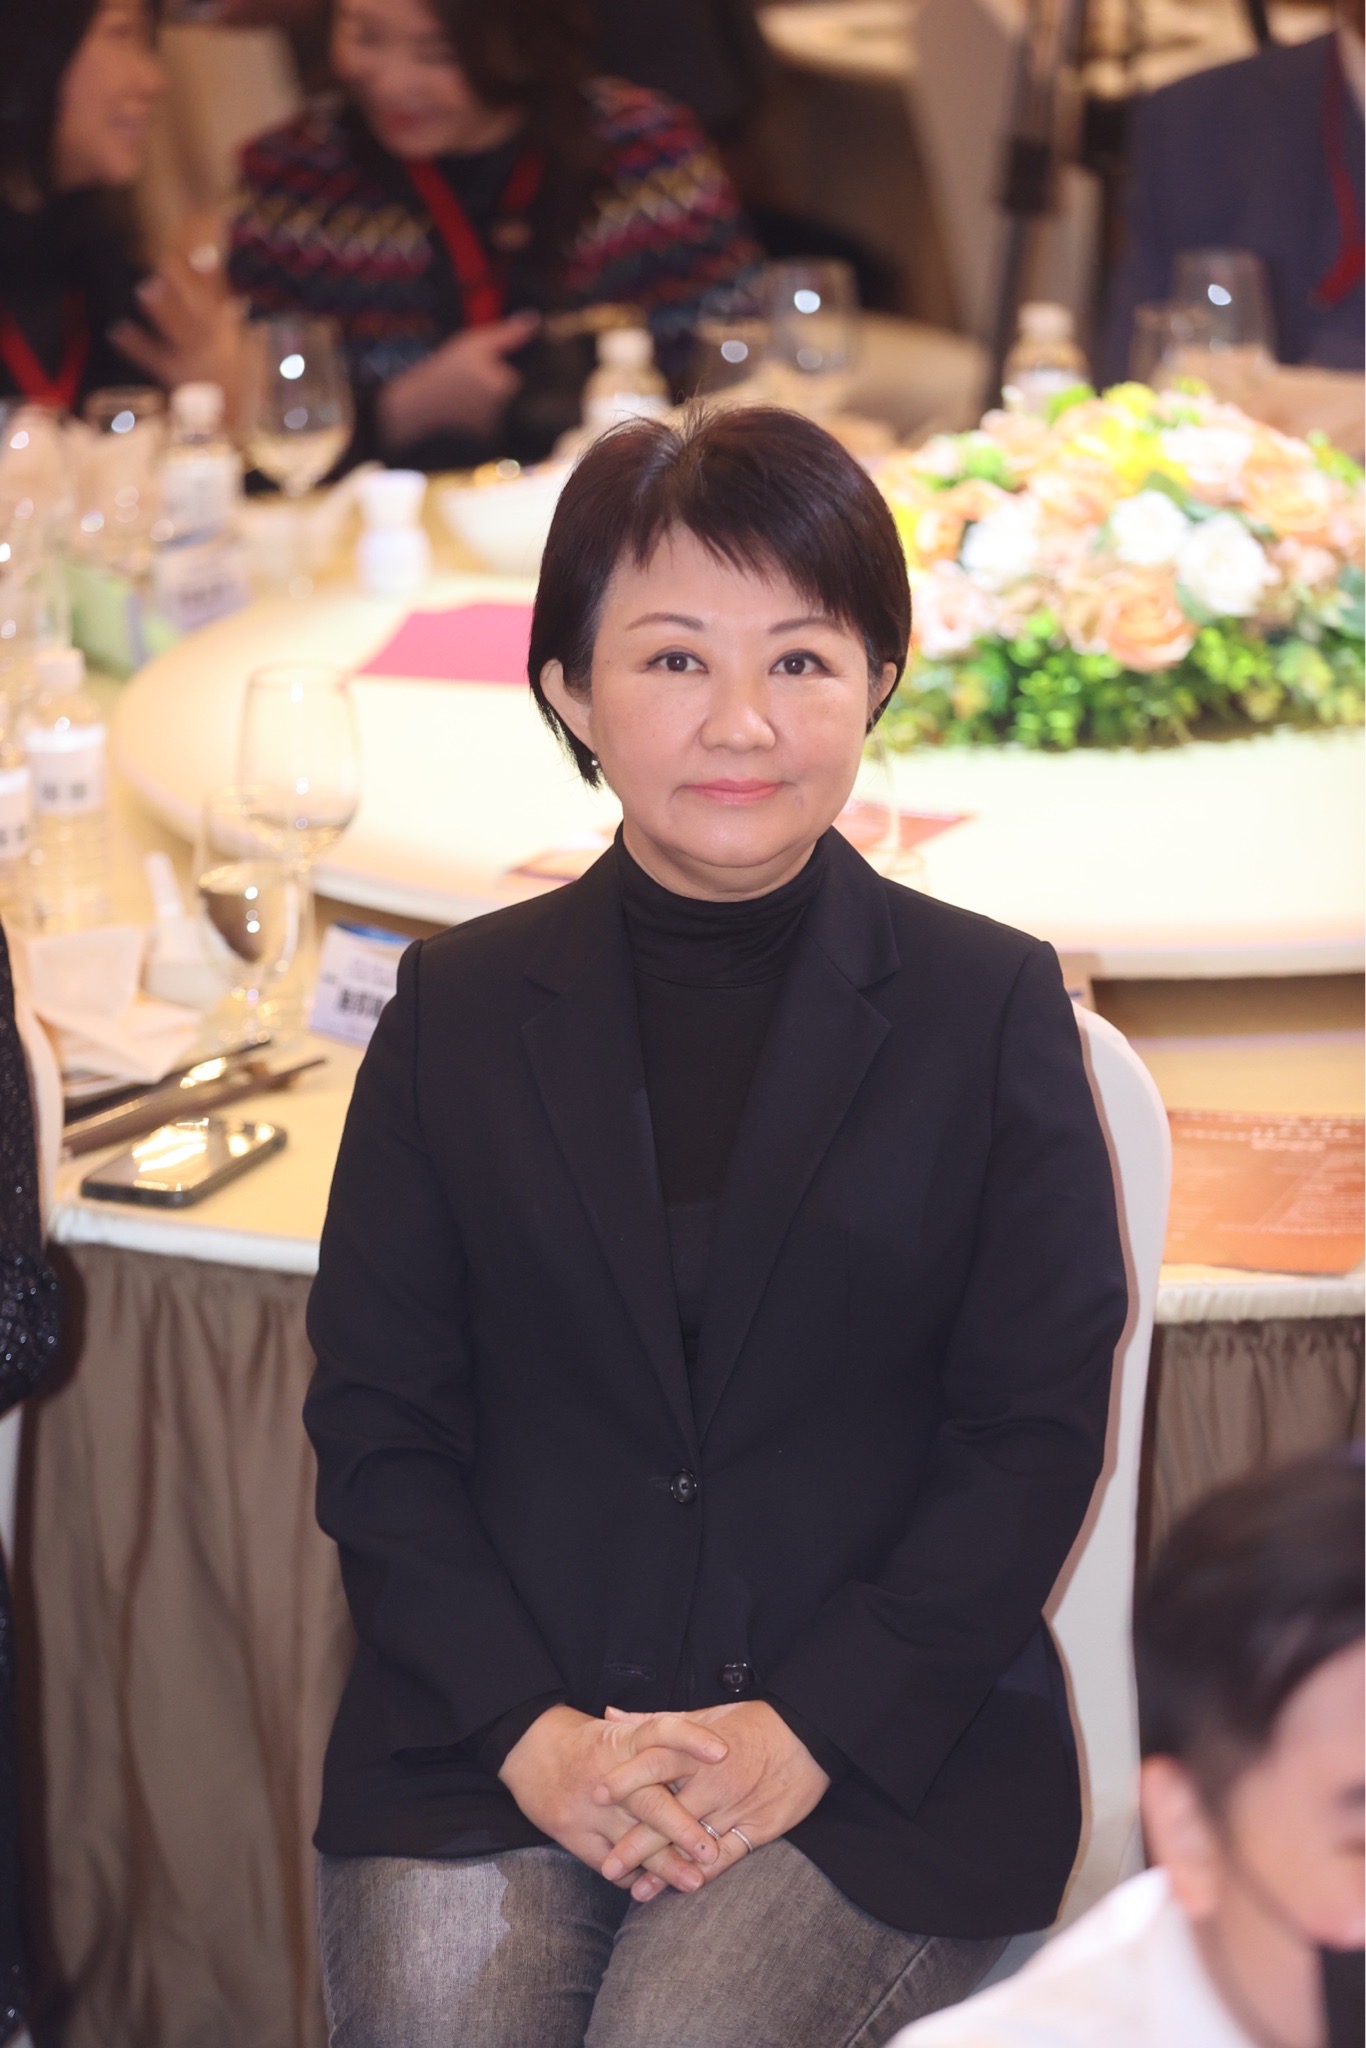 台中市长卢秀燕今天下午出席台湾女力论坛暨中台湾女力论坛联合会成立大会。记者黄仲裕／摄影